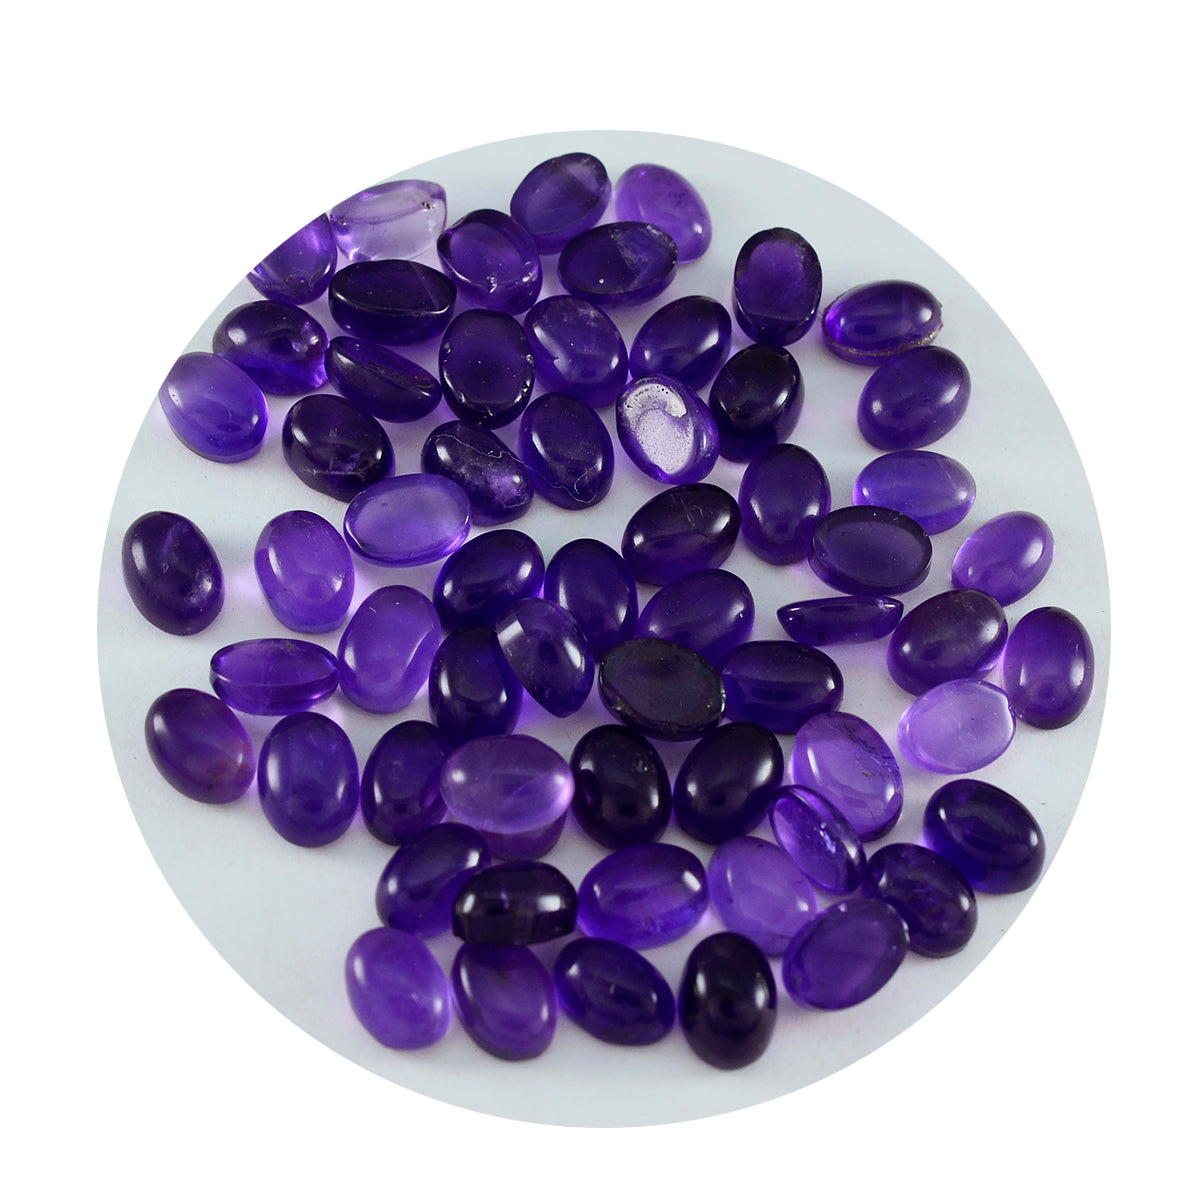 Riyogems 1 pieza cabujón de amatista púrpura 4x6mm forma ovalada piedra de buena calidad